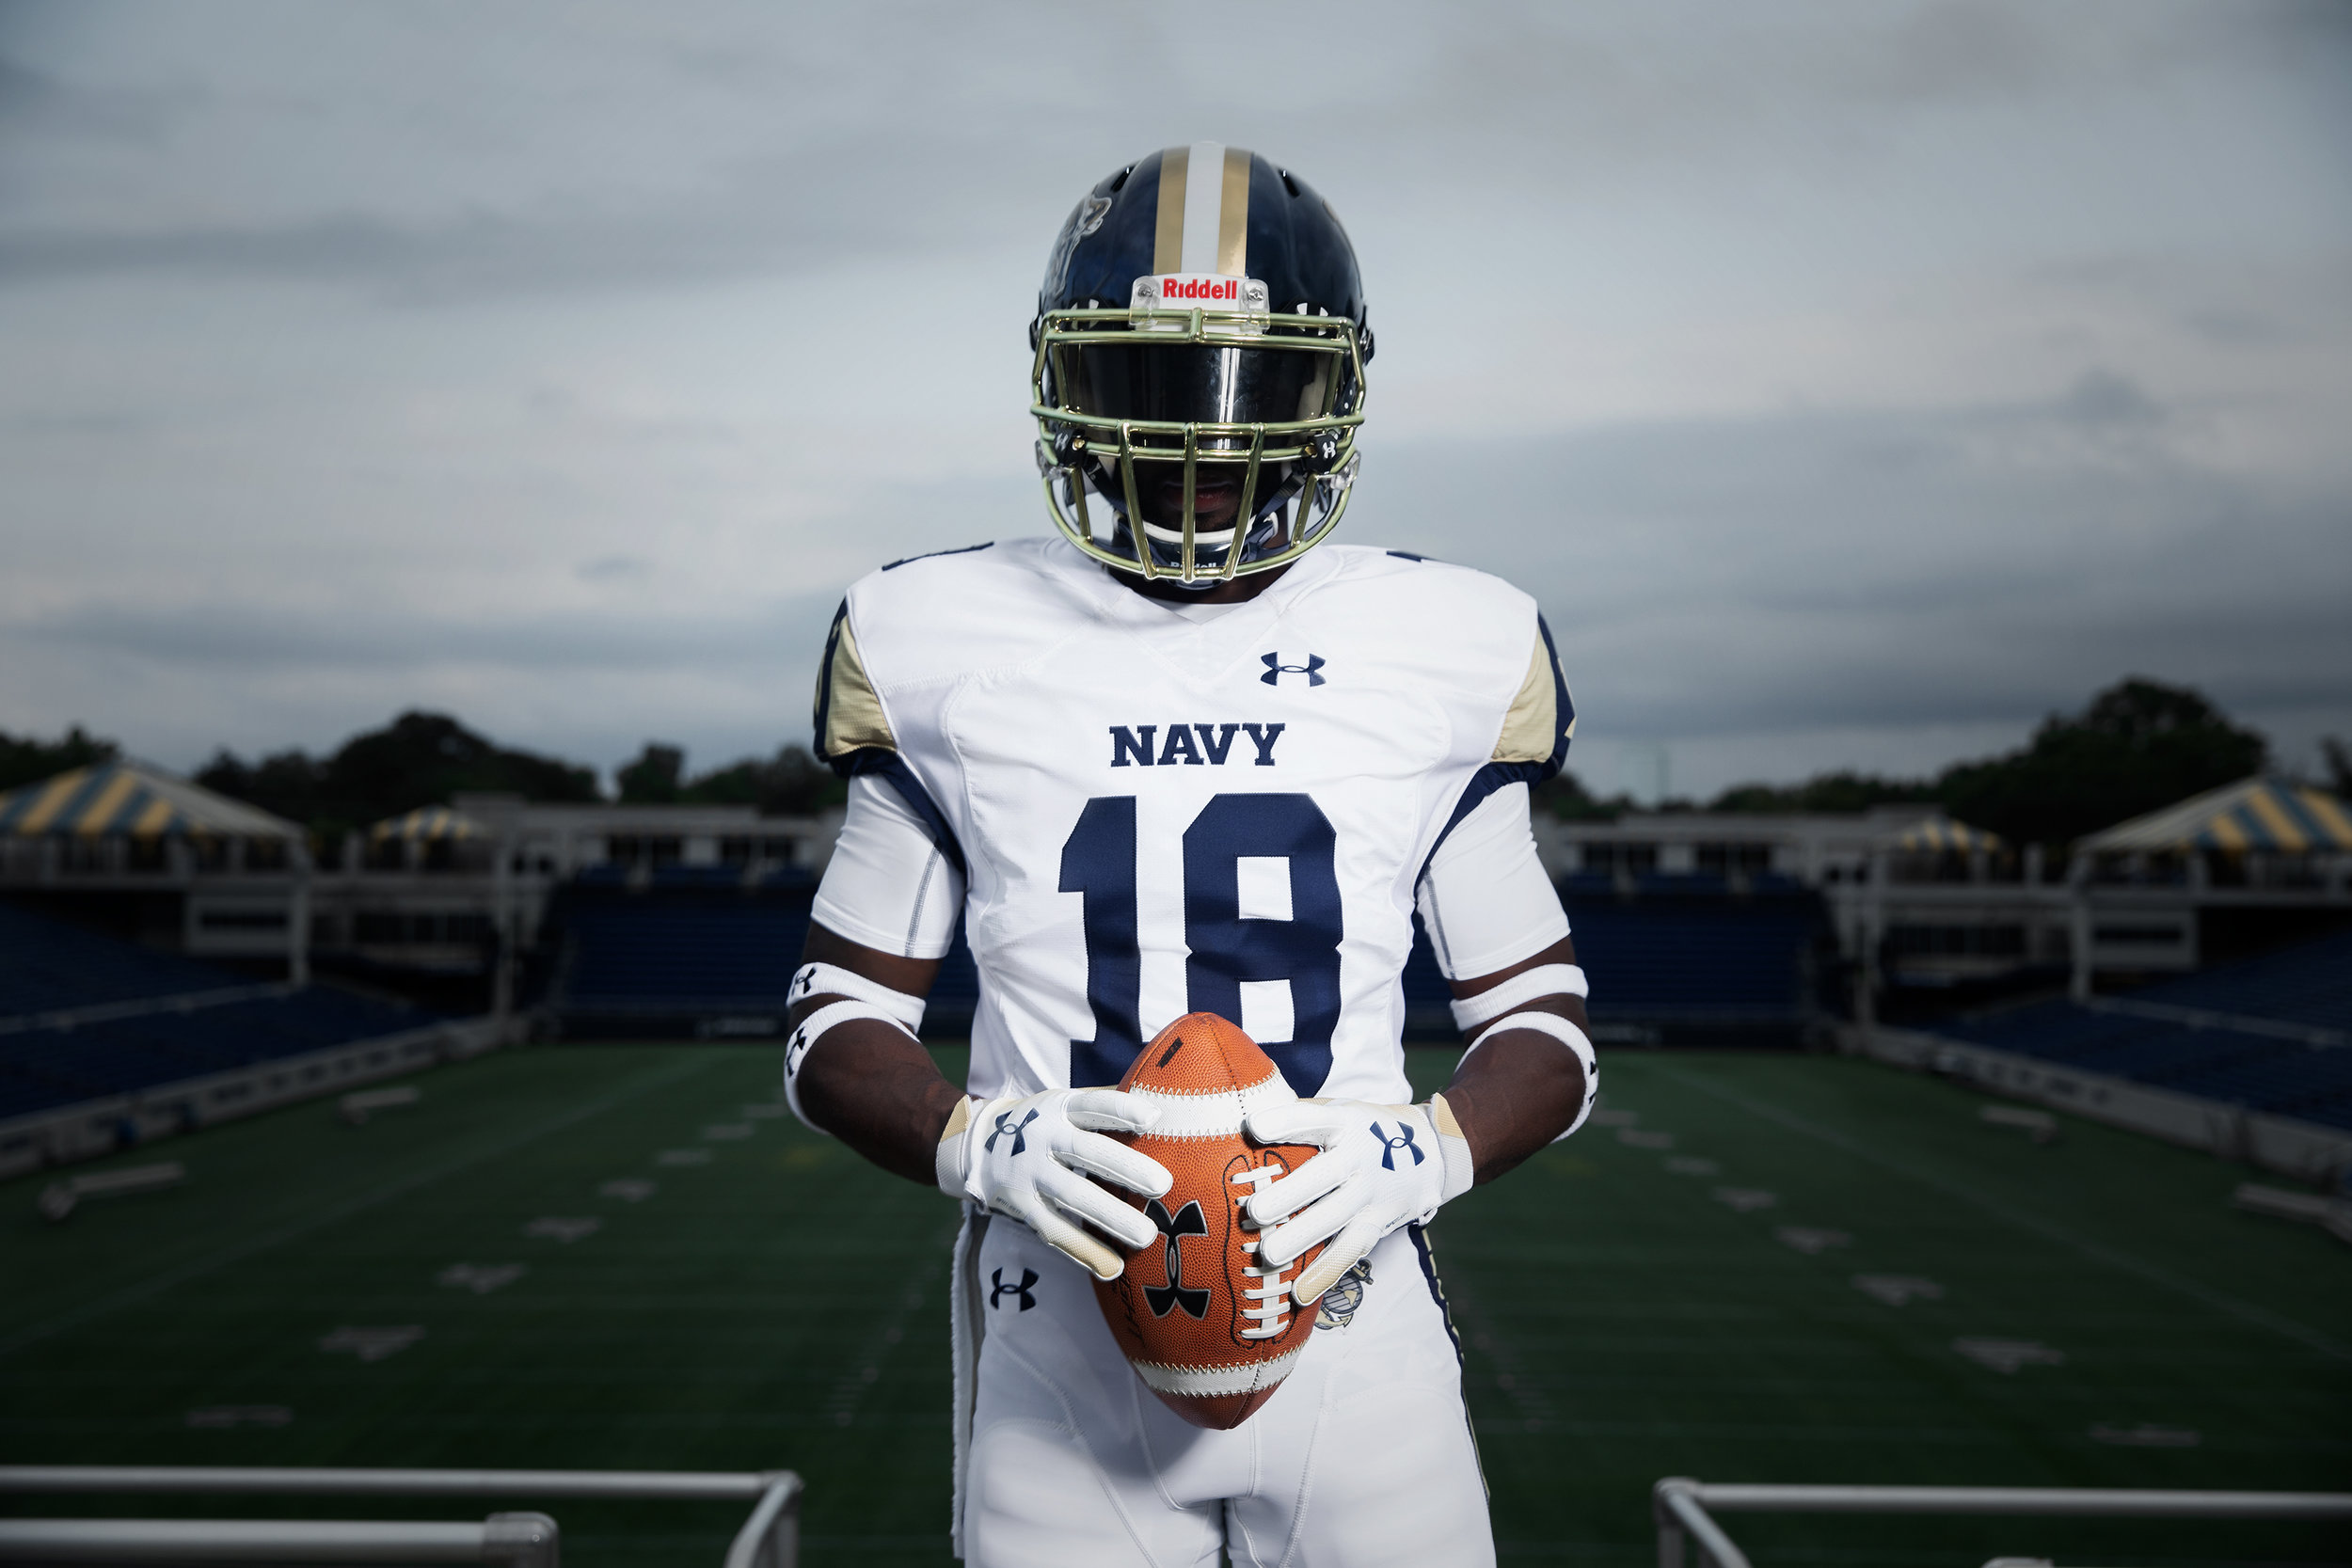 army navy 2019 jerseys